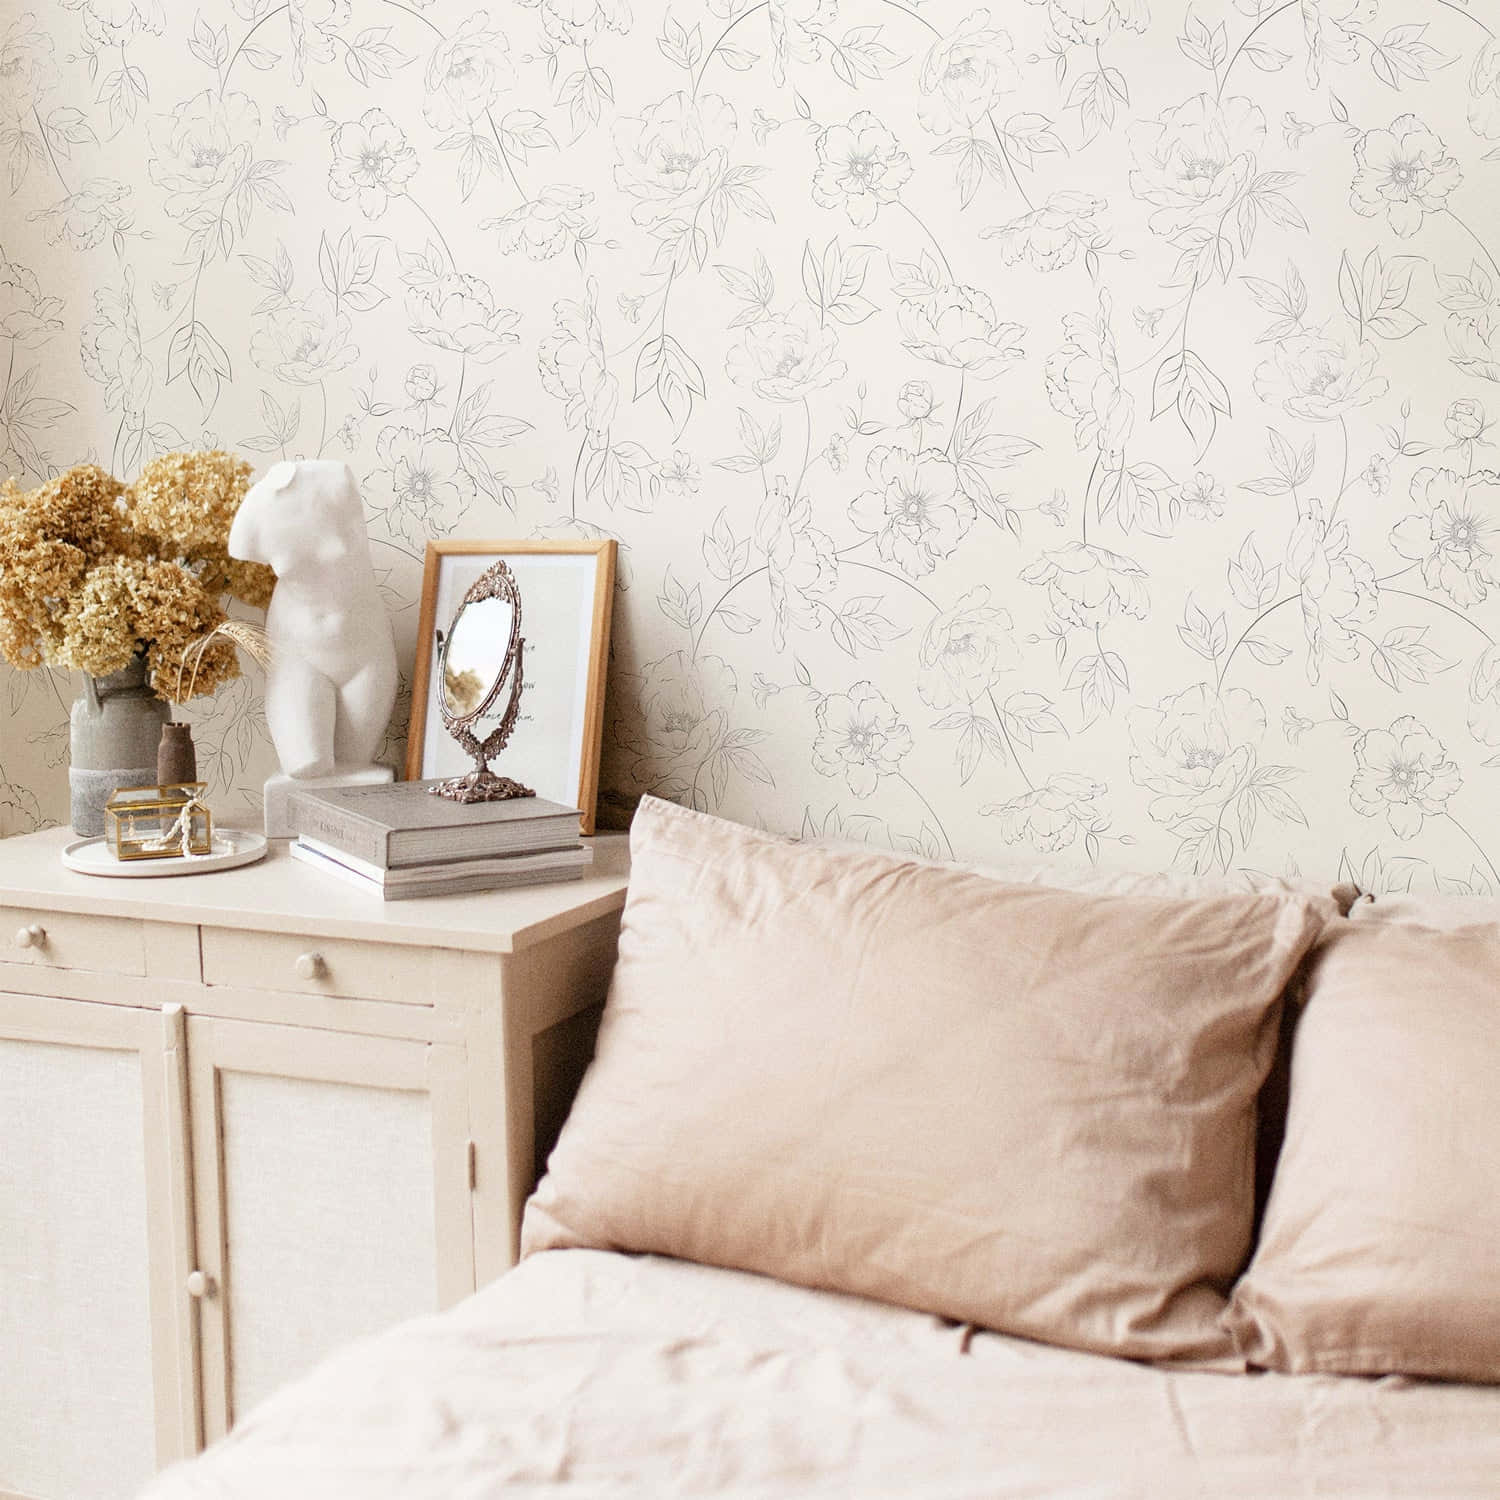 Bedroom Designed With Subtle Patterns Wallpaper